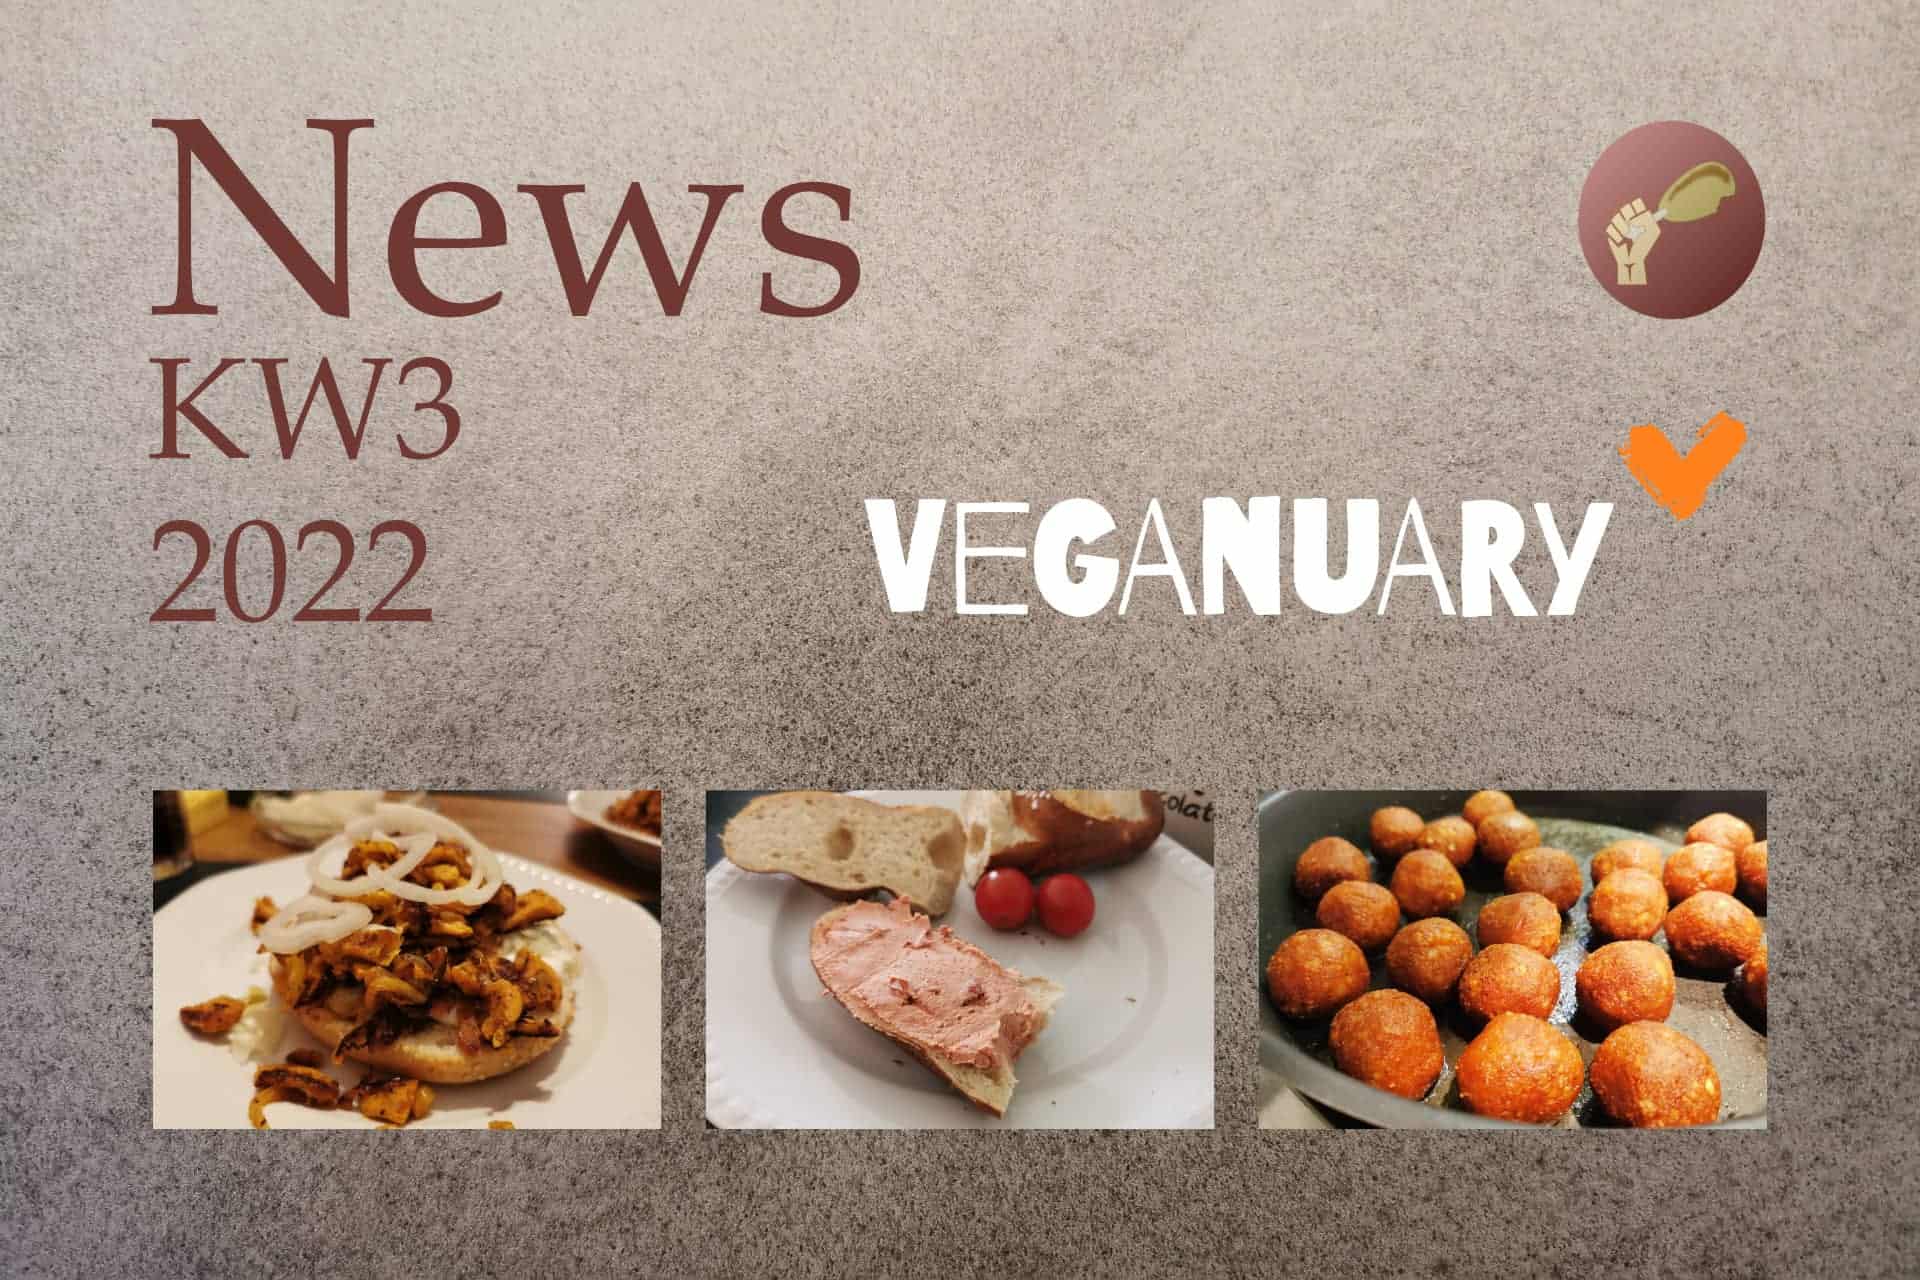 Fleischersatz News KW3 Veganuary